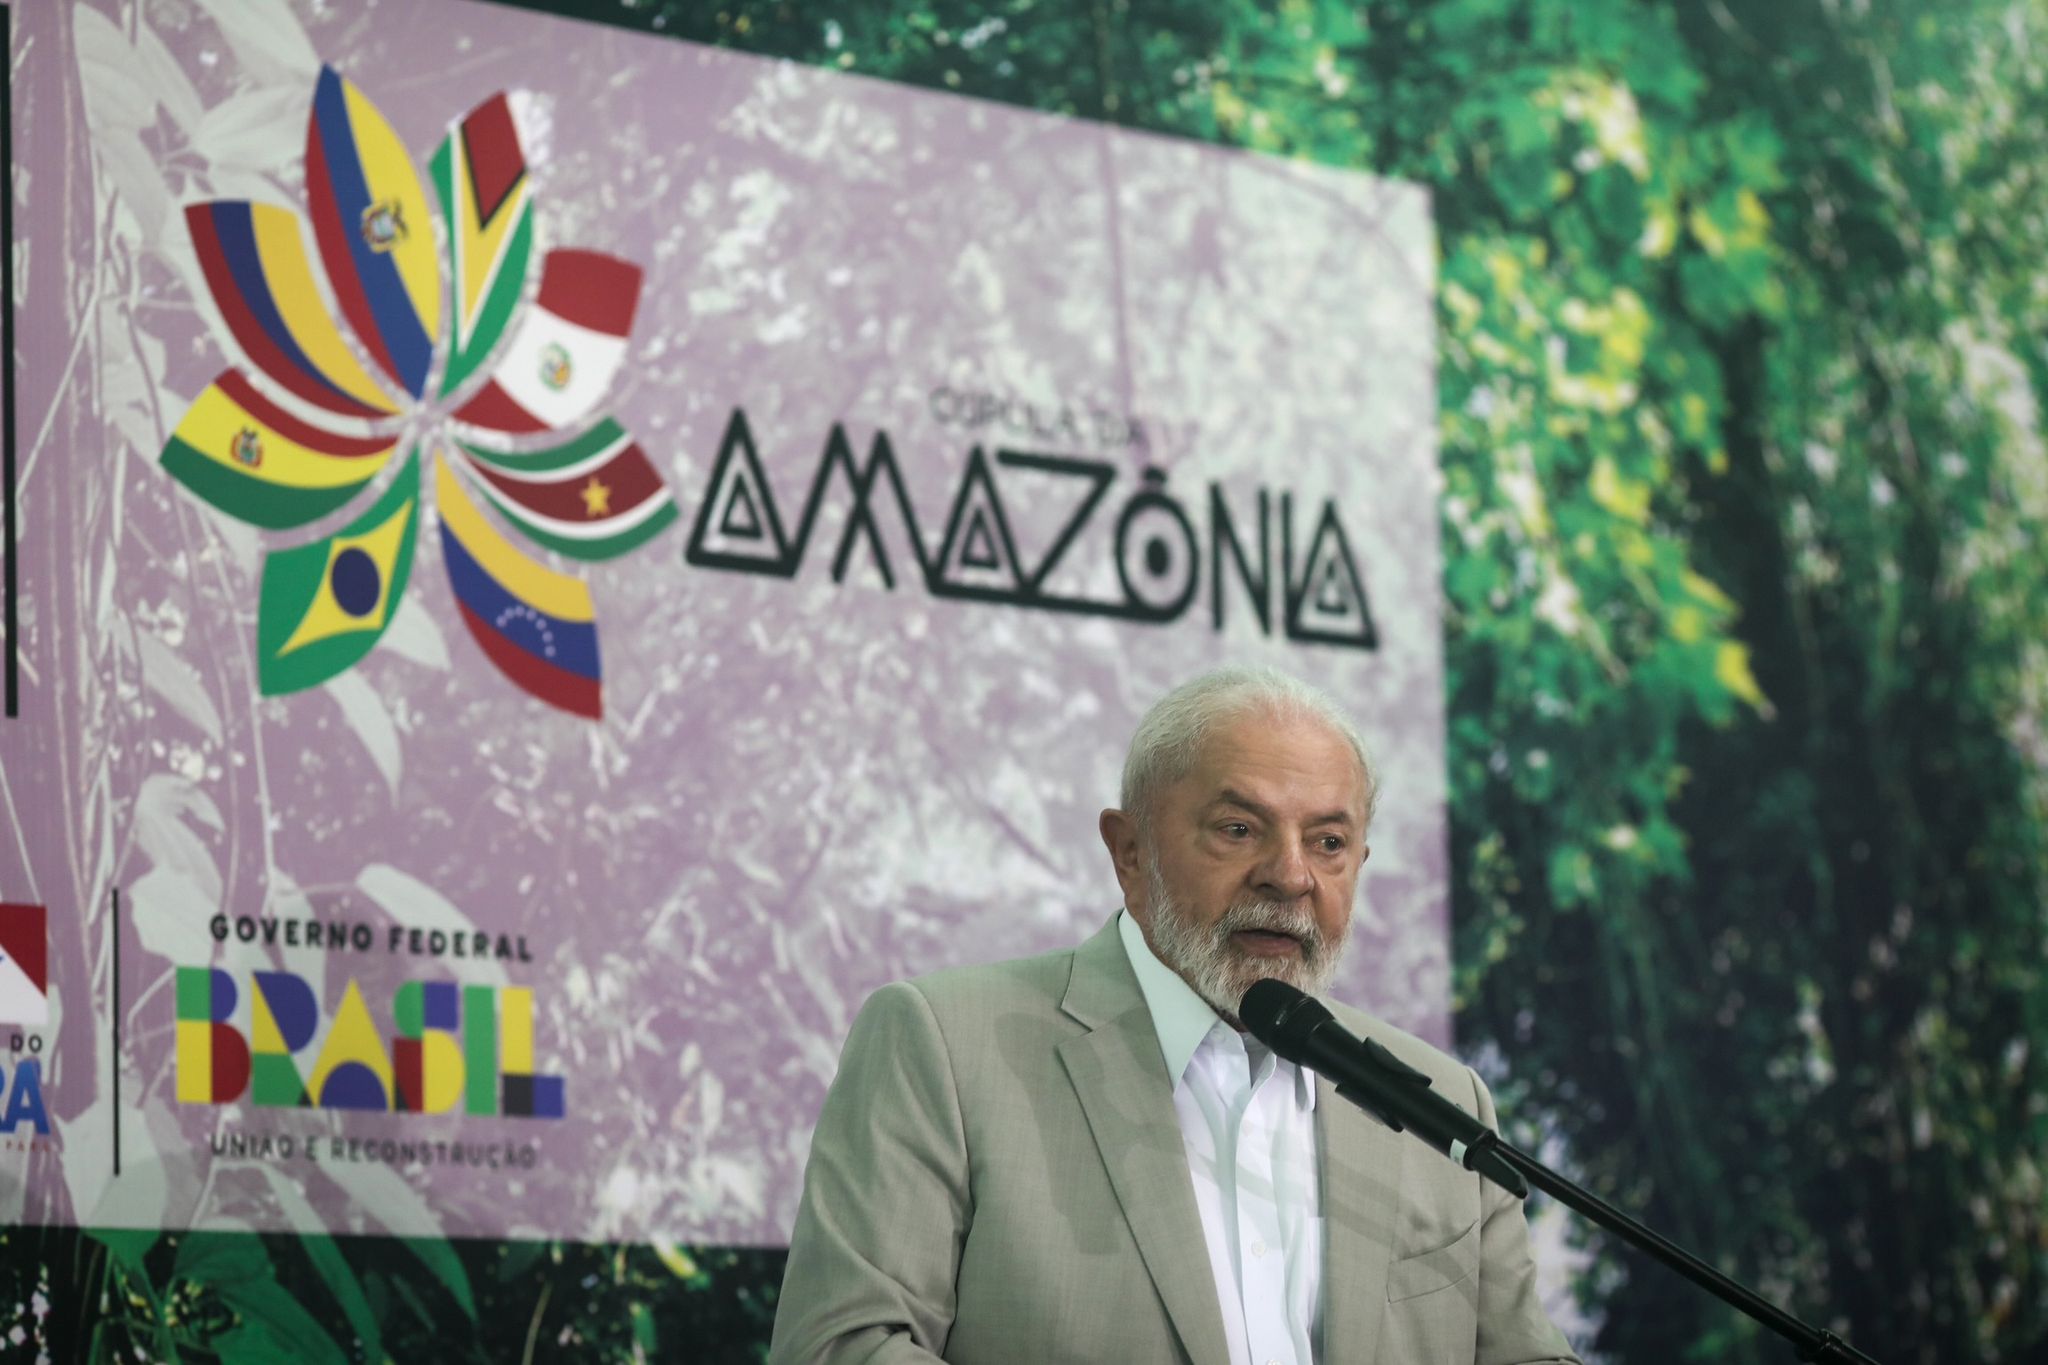 Der brasilianische Präsident Lula fordert die Industriestaaten auf, ihren eigenen Beitrag zum Klima- und Umweltschutz zu leisten.